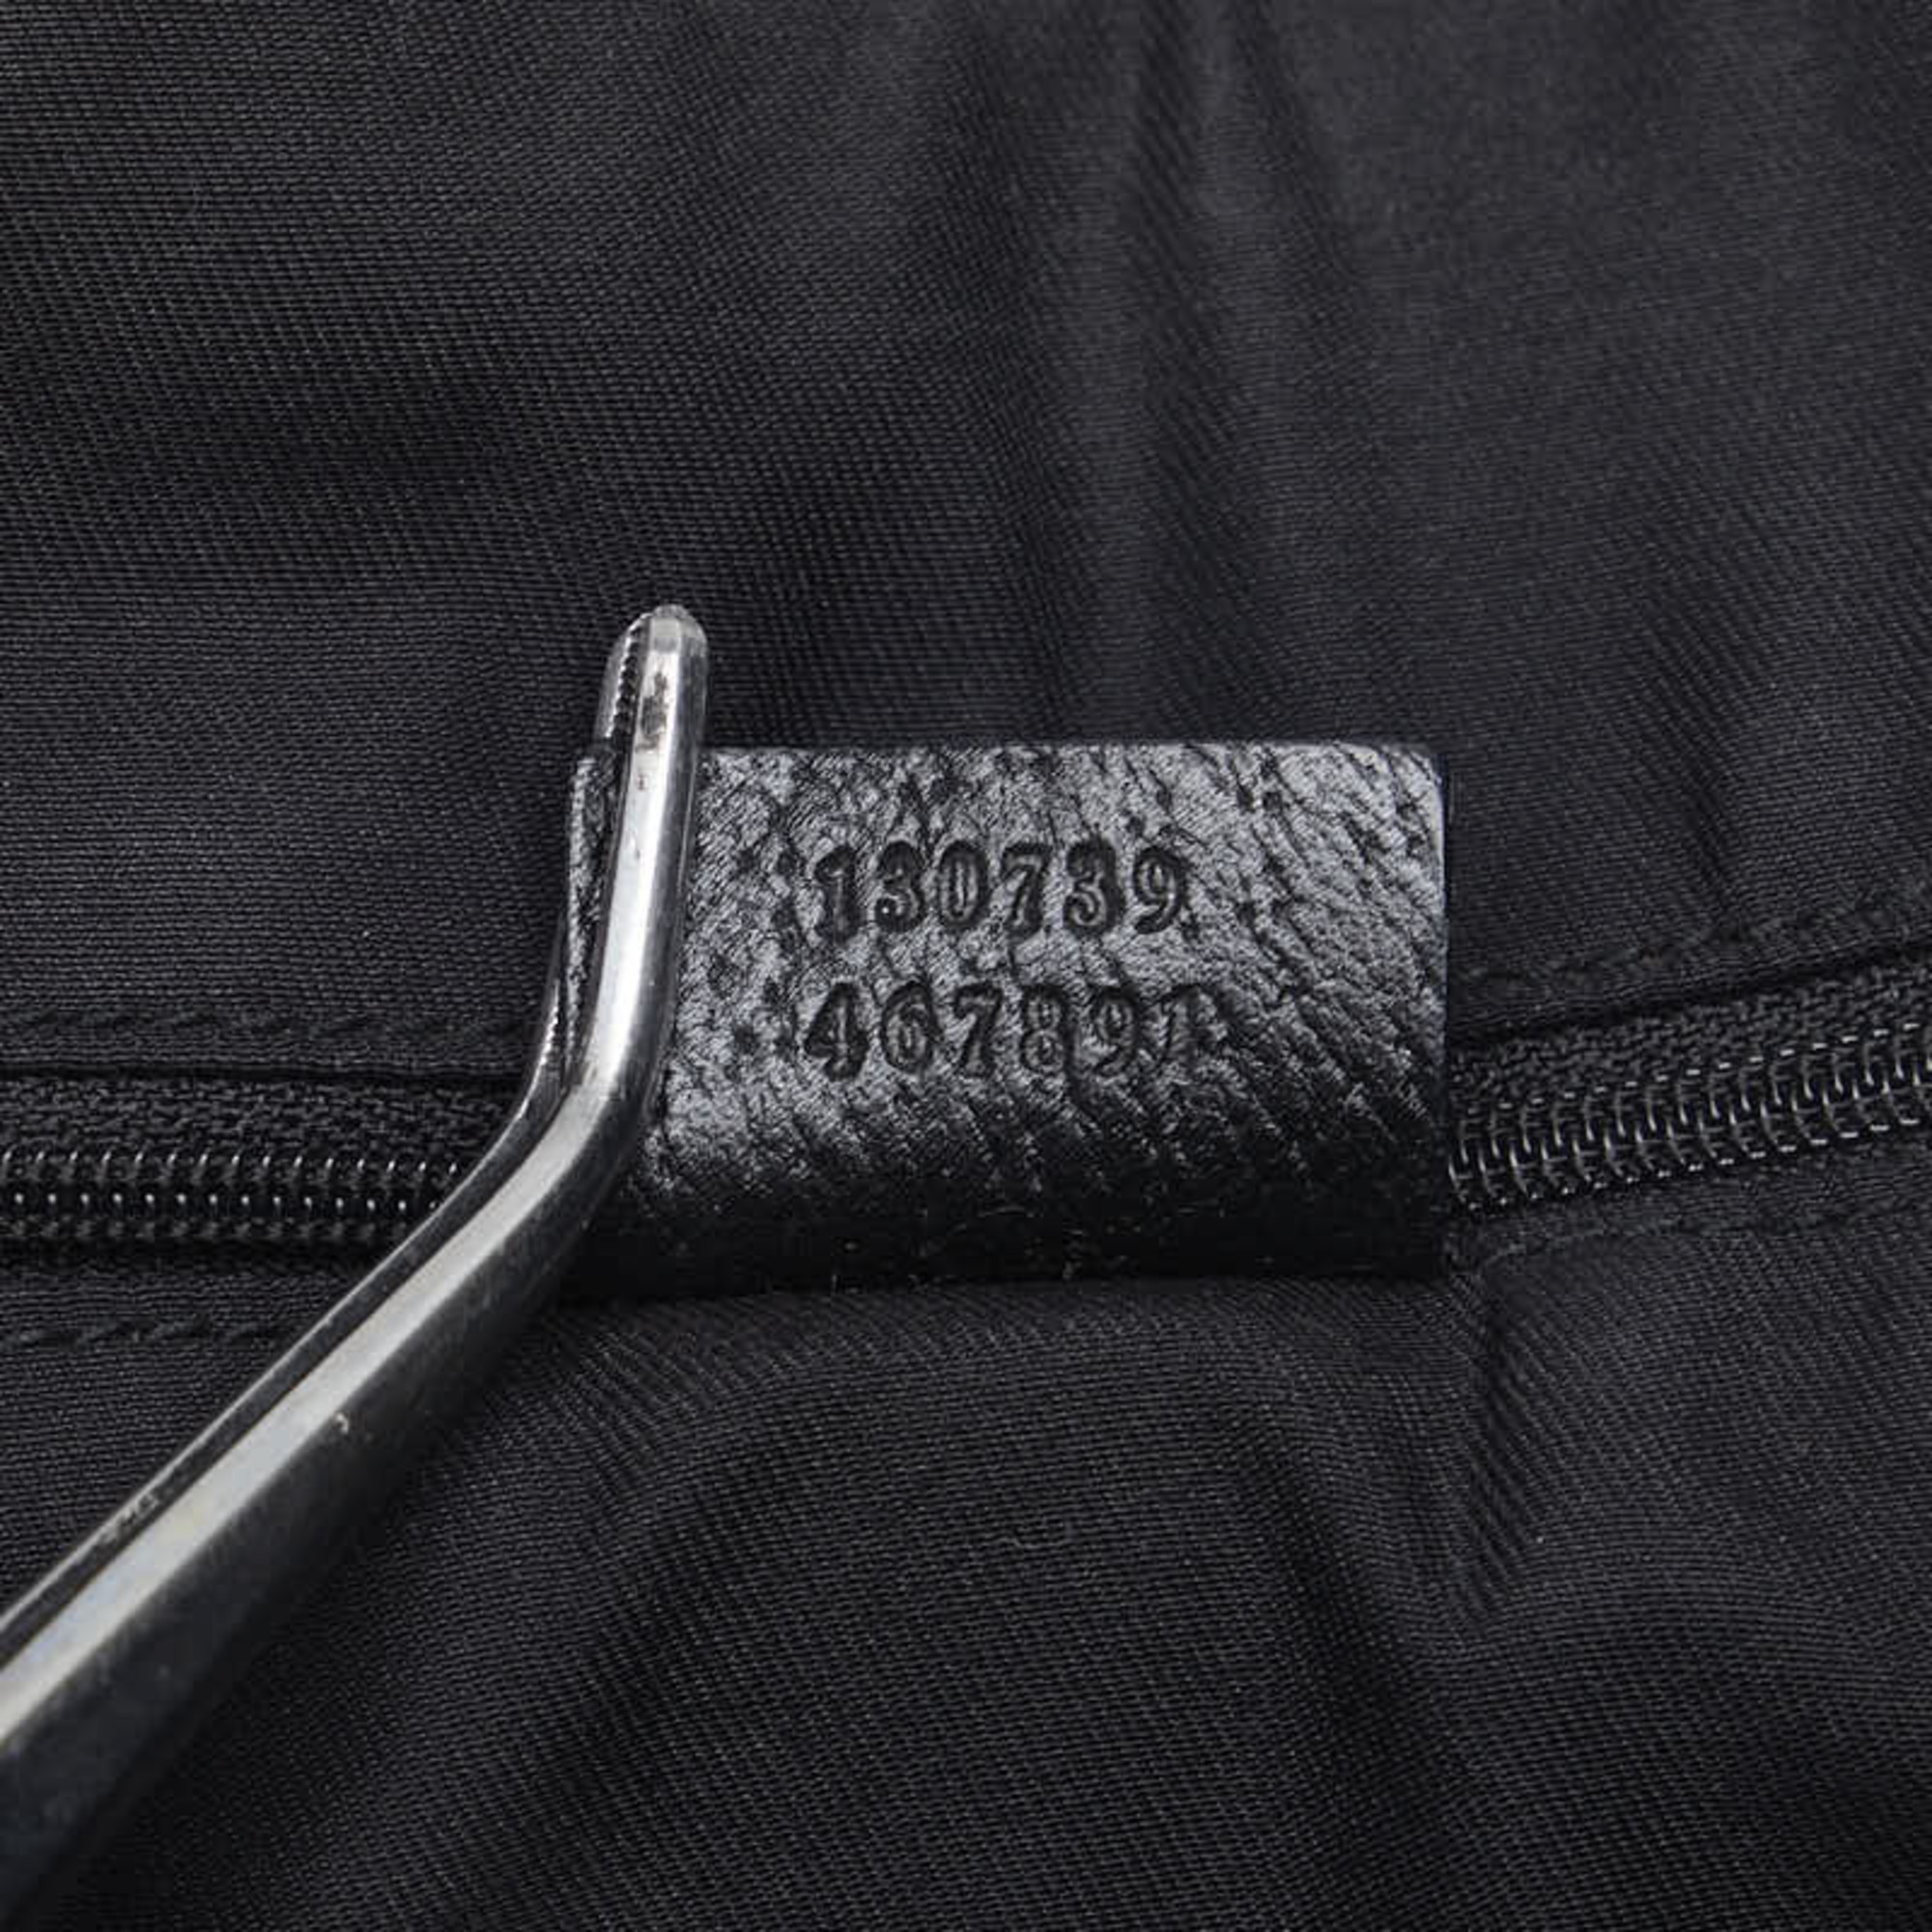 Gucci GG Canvas Abbey Handbag Tote Bag 130739 Black Leather Women's GUCCI